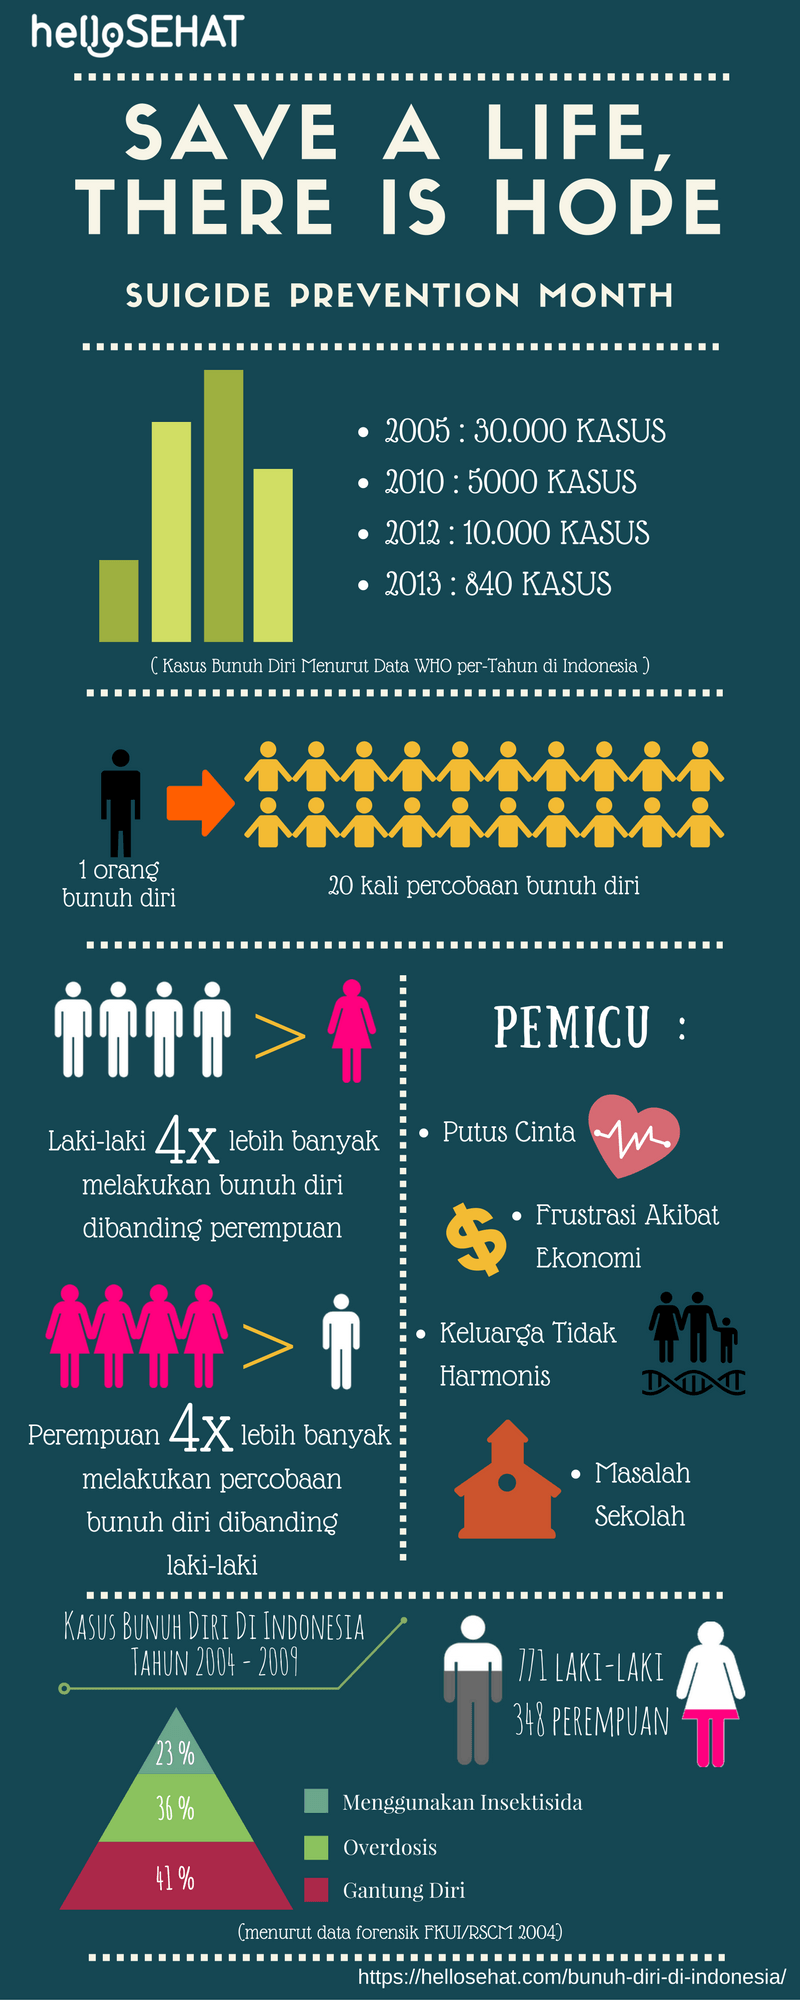 Selbstmord-Infografik in Indonesien - hellosehat